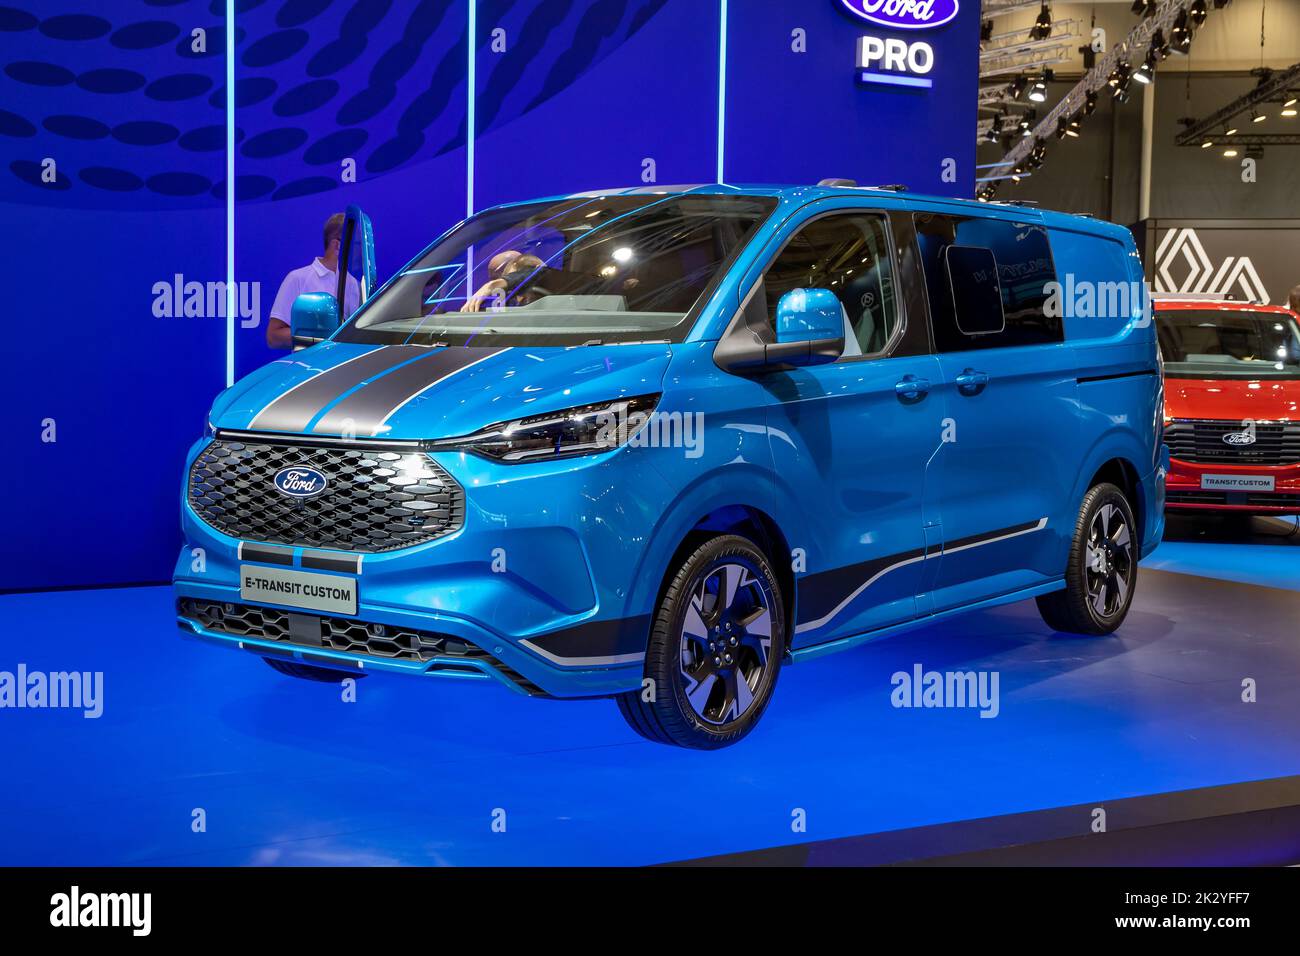 Ford E-Transit Custom tout-électrique présenté au salon de l'automobile IAA de Hanovre. Allemagne - 20 septembre 2022 Banque D'Images